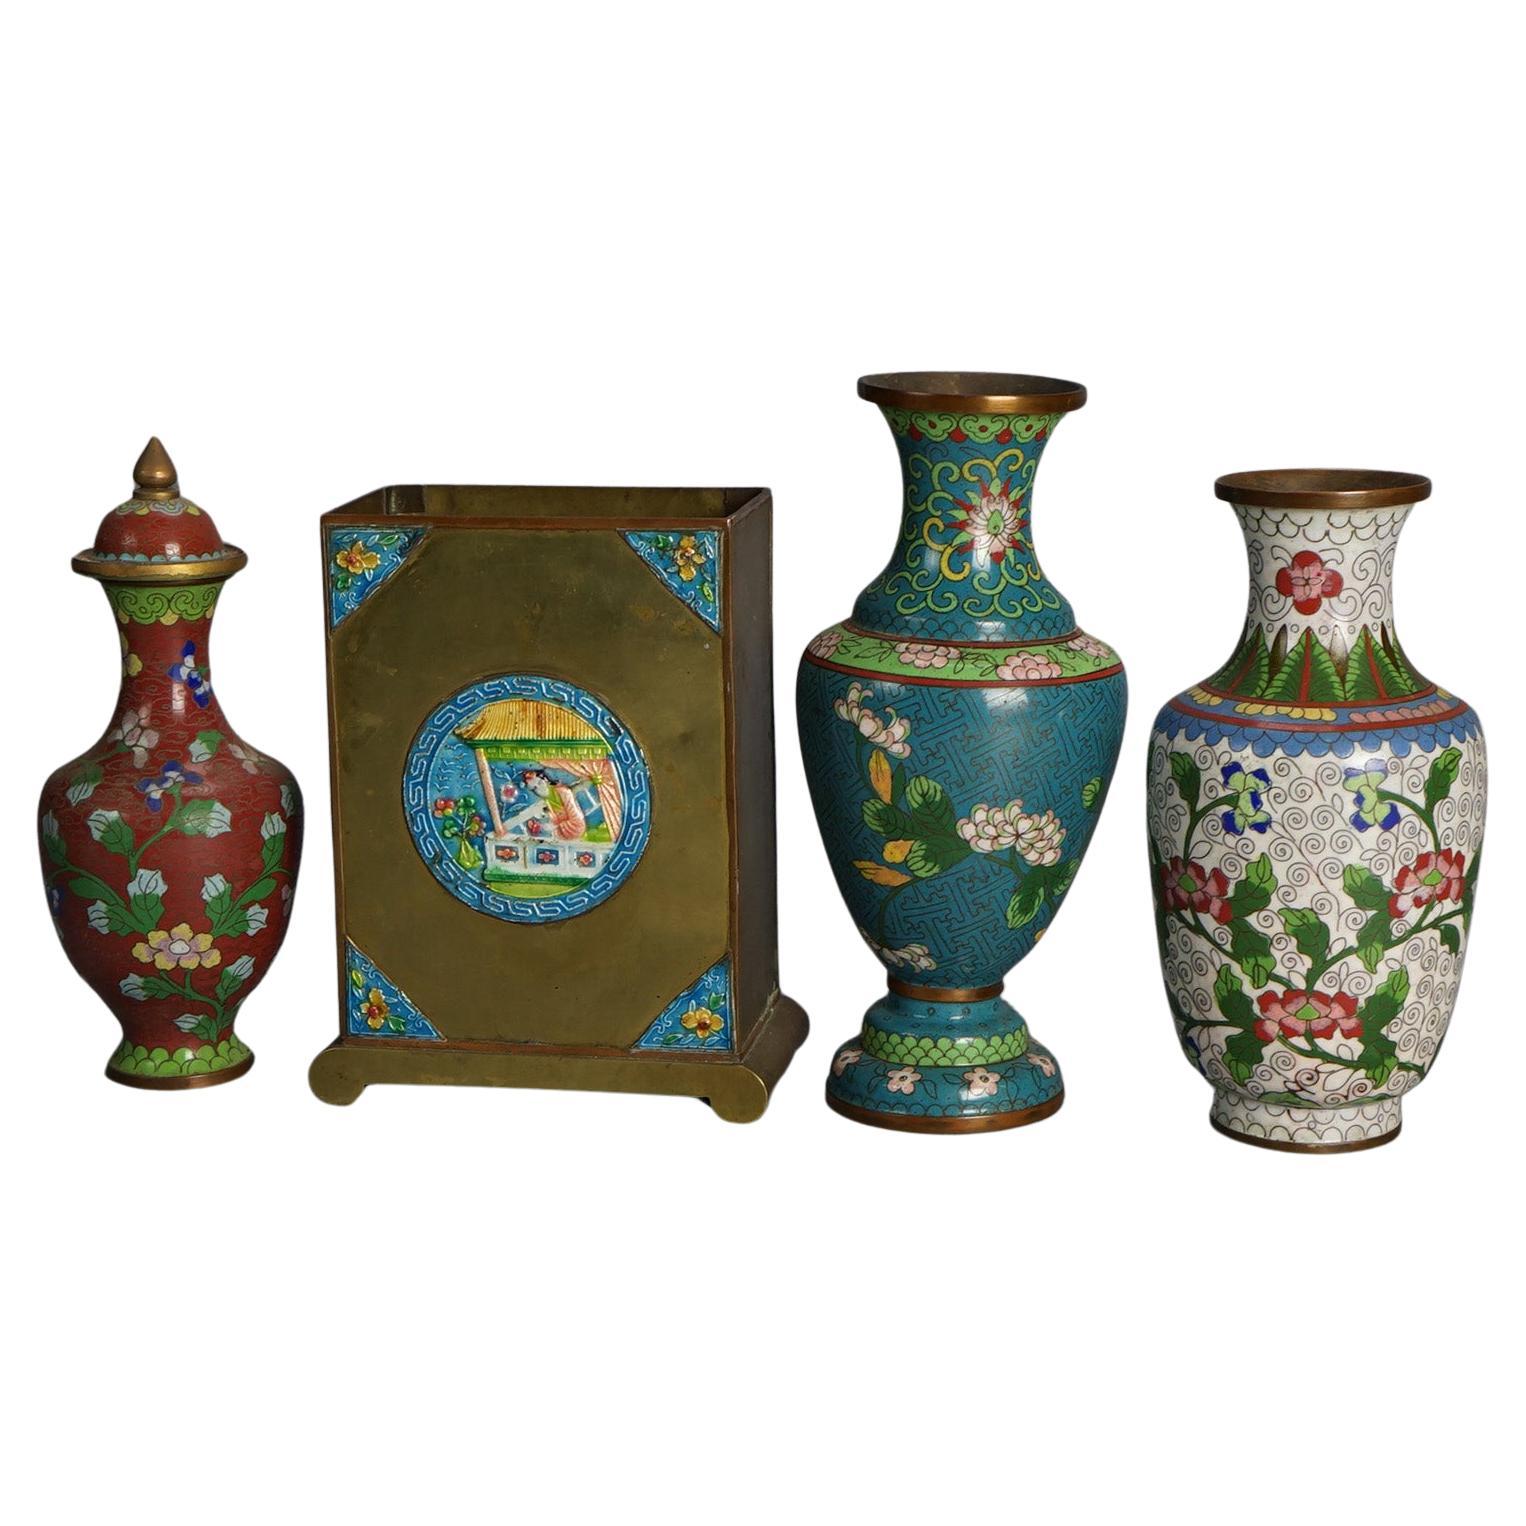 Antike chinesische Cloisonné-Vasen, emailliert, um 1920